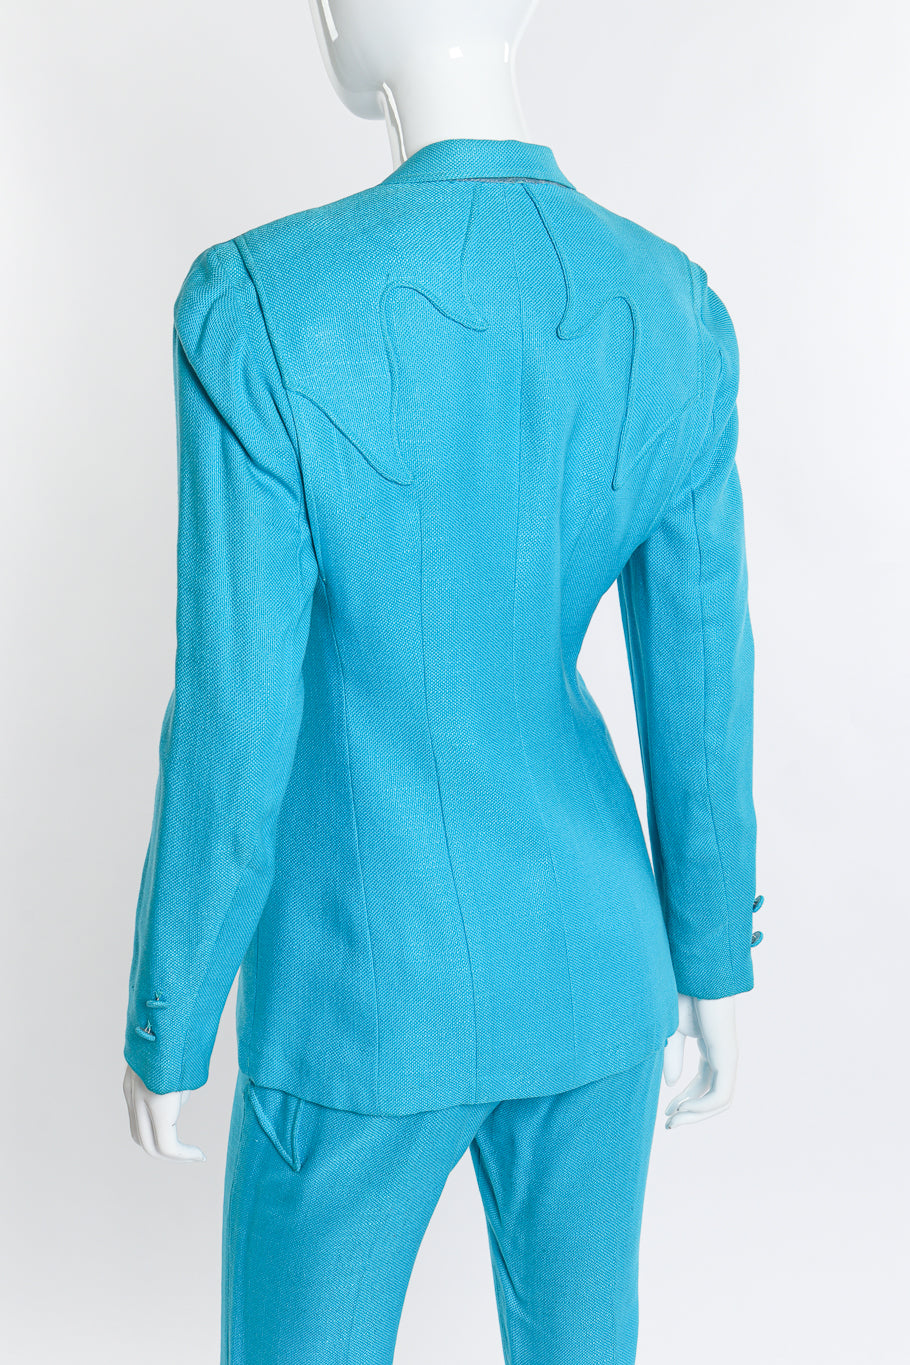 Vintage Lasso Western Jacket & Pant Suit back jacket on mannequin closeup @recess la